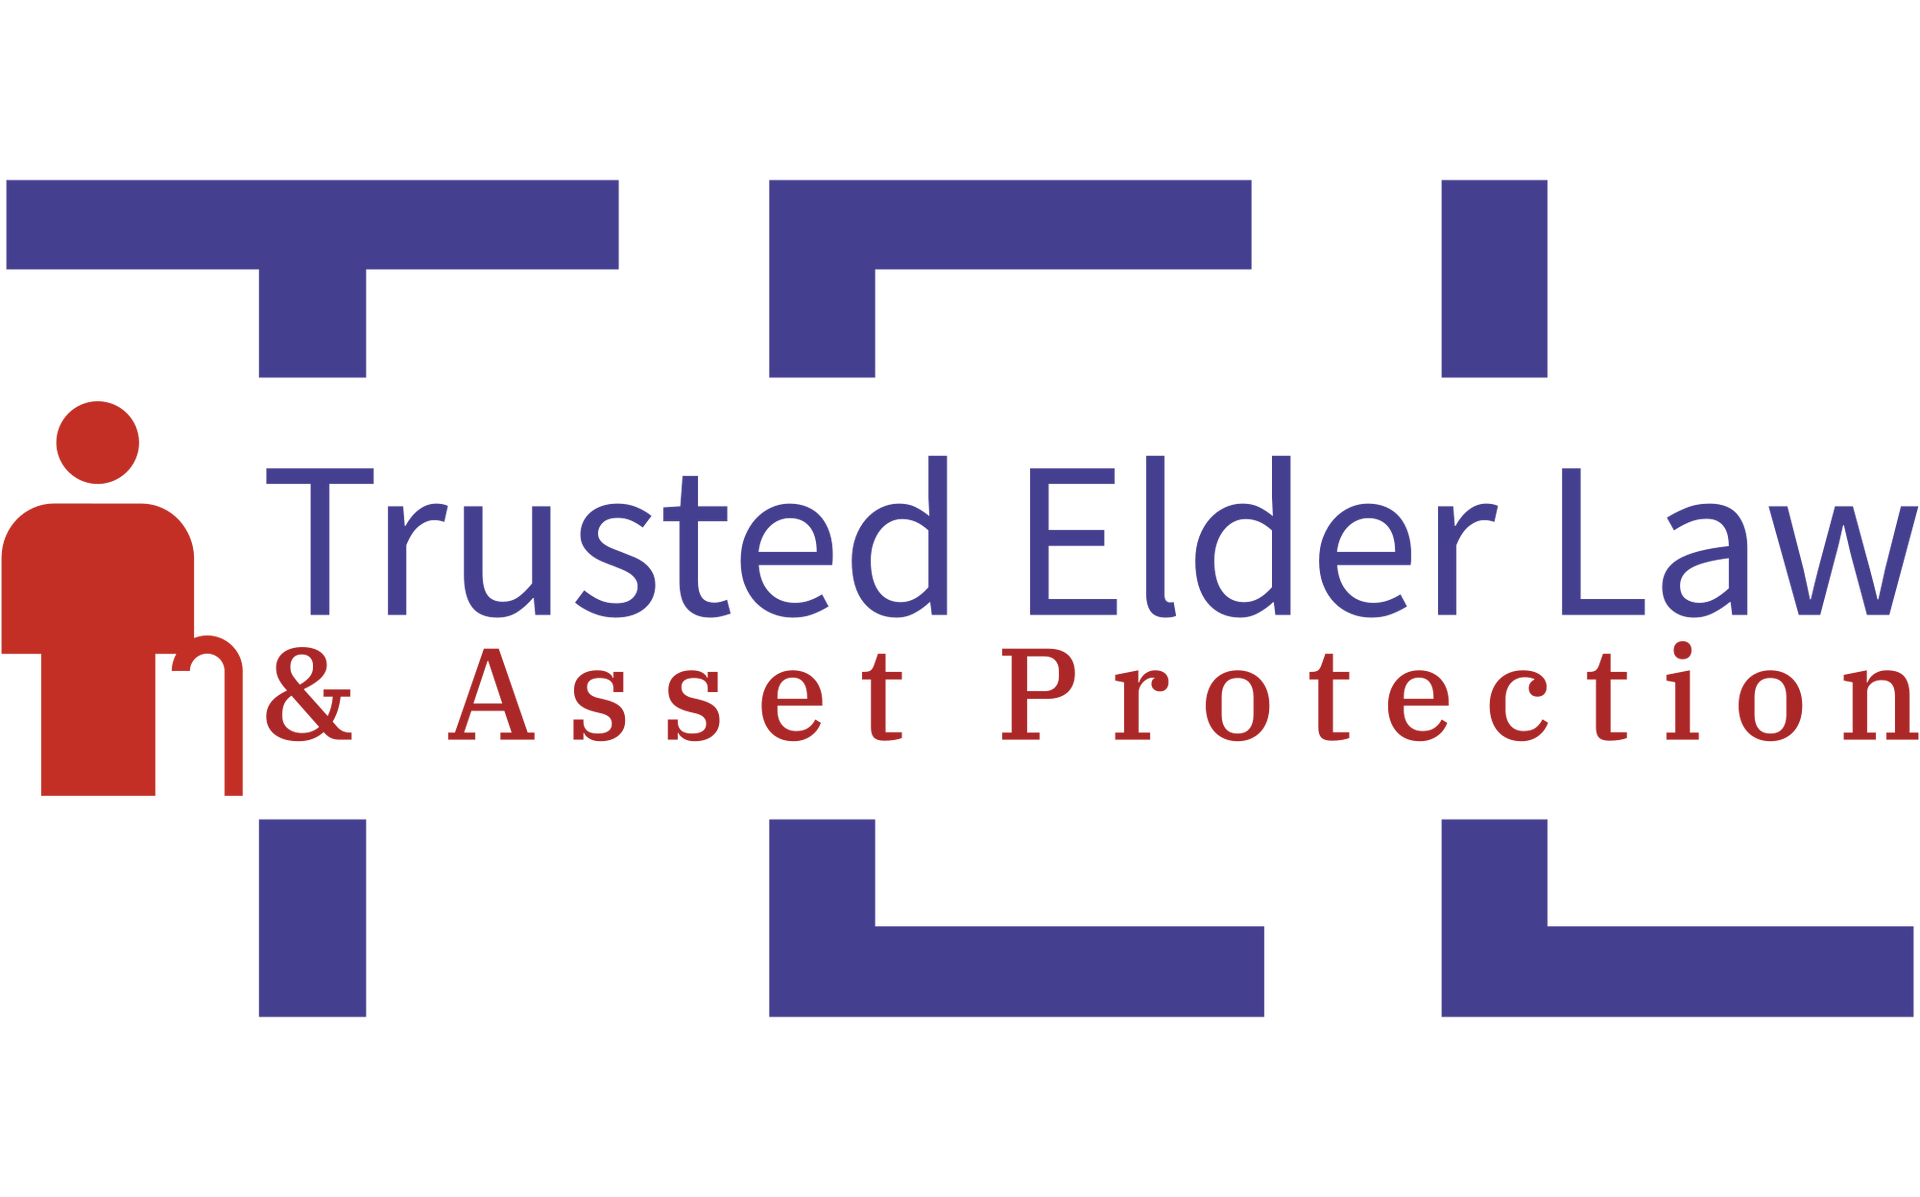 Pensacola Florida Elder Law Firm Trusted Elder Law & Asset Protection Medicaid planning estate planning probate trust administration Estate Planning | Medicaid Planning | Elder Law | Probate